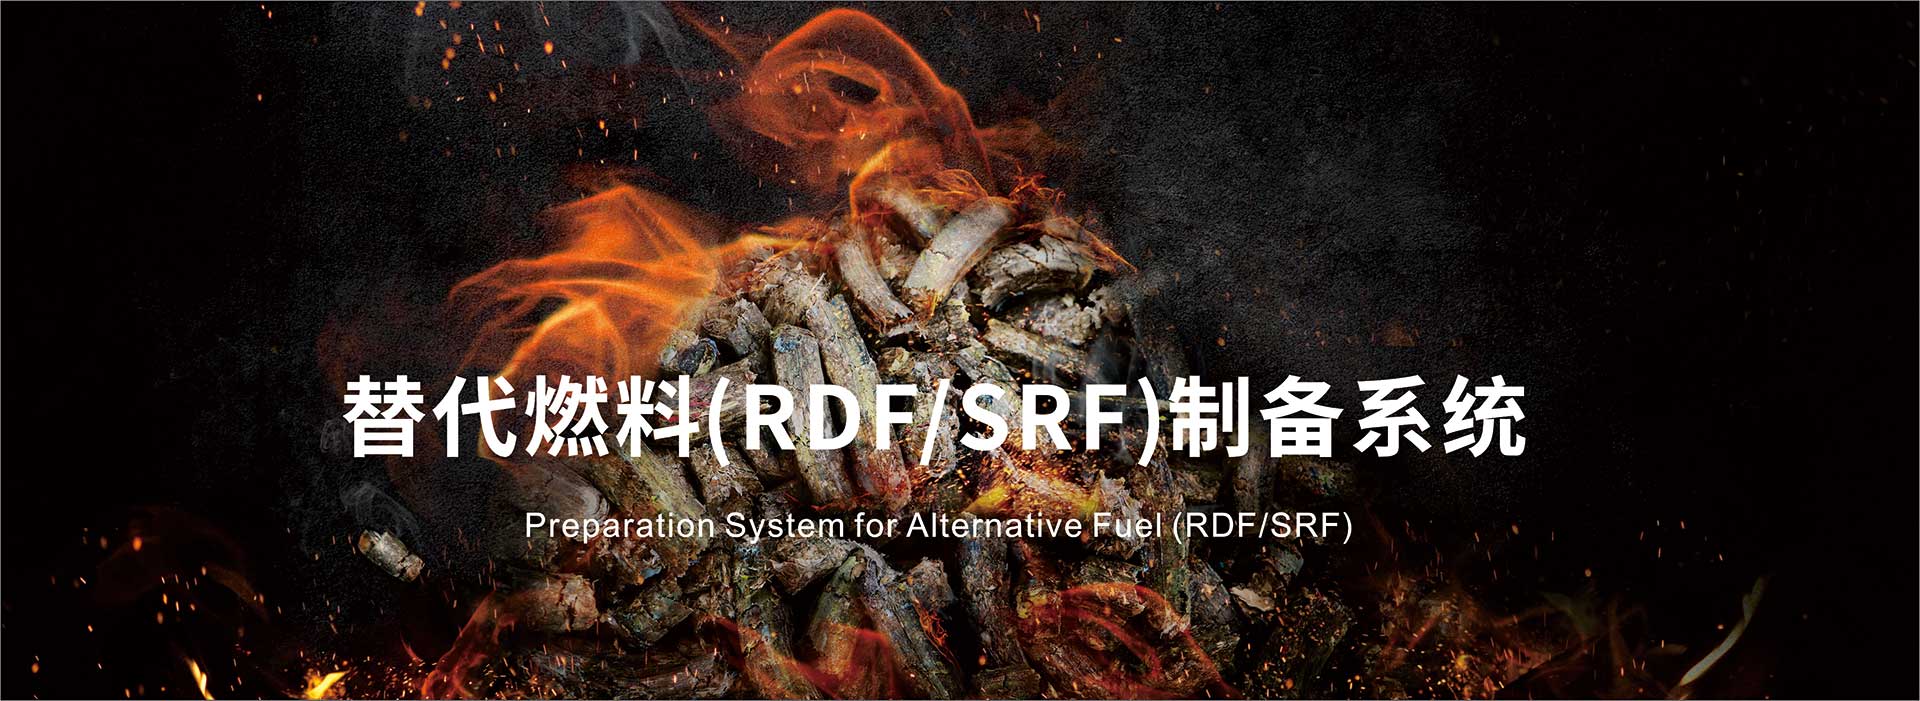 替代燃料(RDF/SRF)制备系统